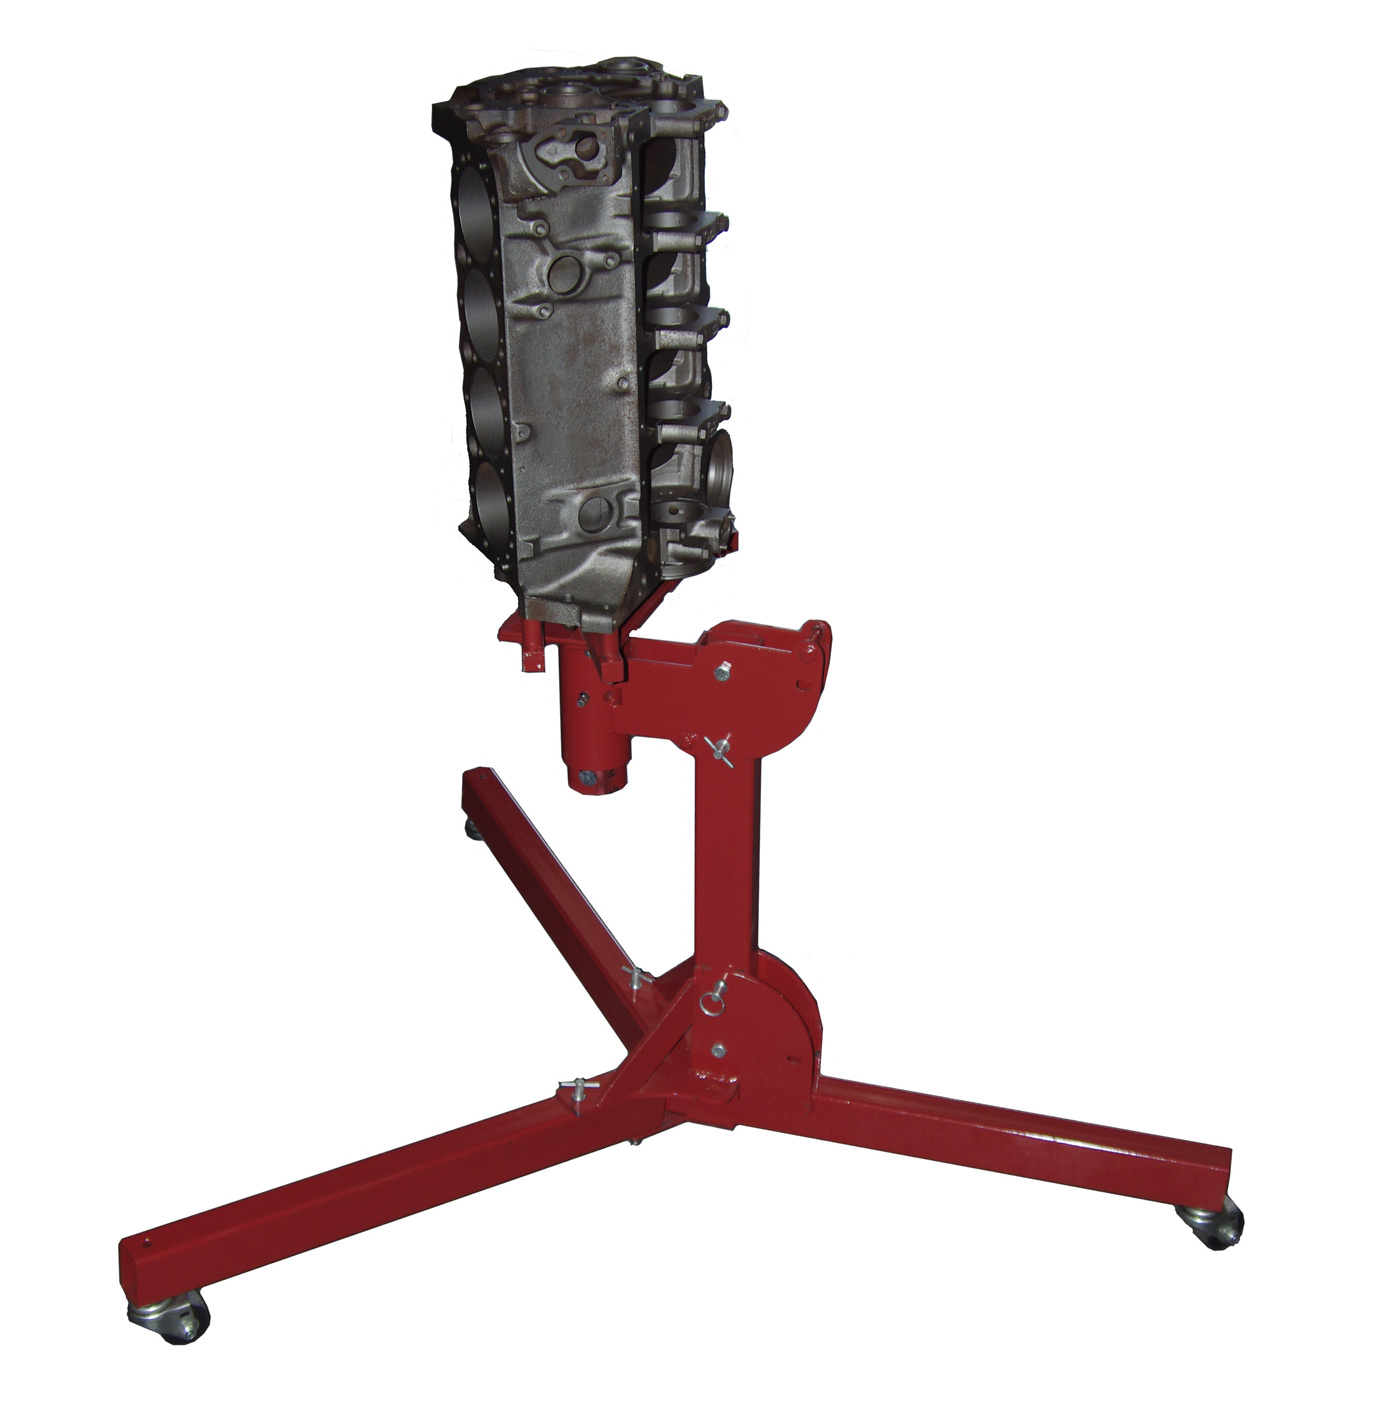 Merrick USA Made Fold & Tilt Engine Stand